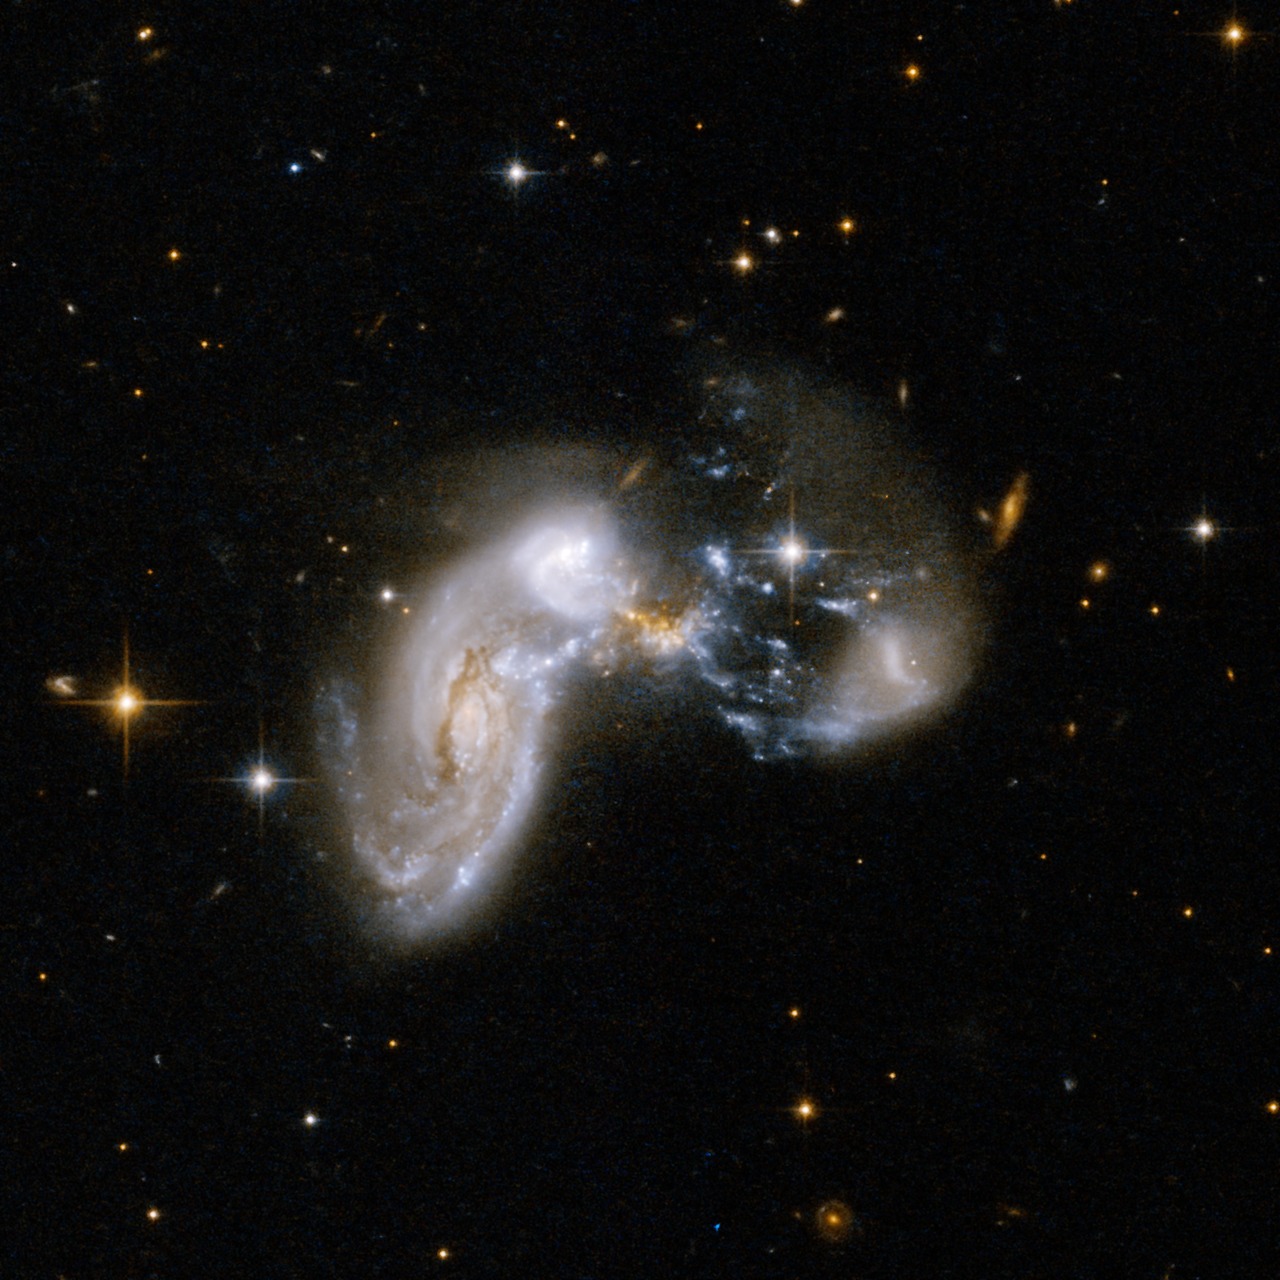 Bursting with Stars: Starburst Galaxy Zw II 96